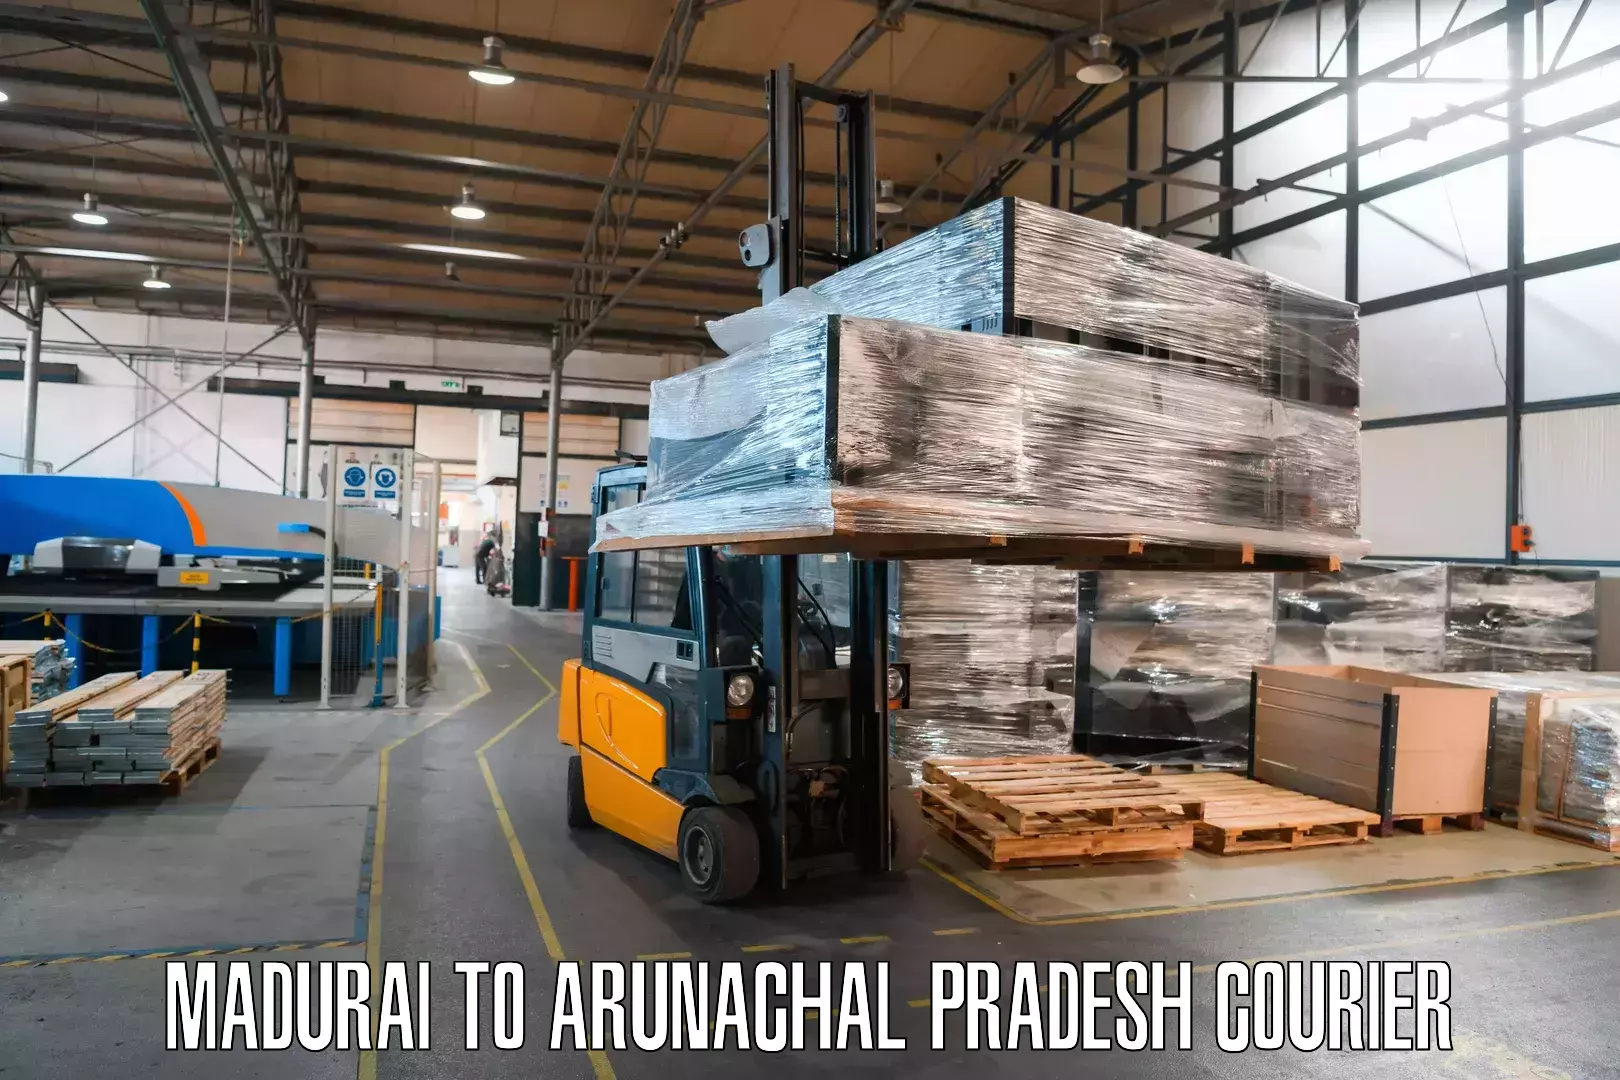 Courier service comparison Madurai to NIT Yupia